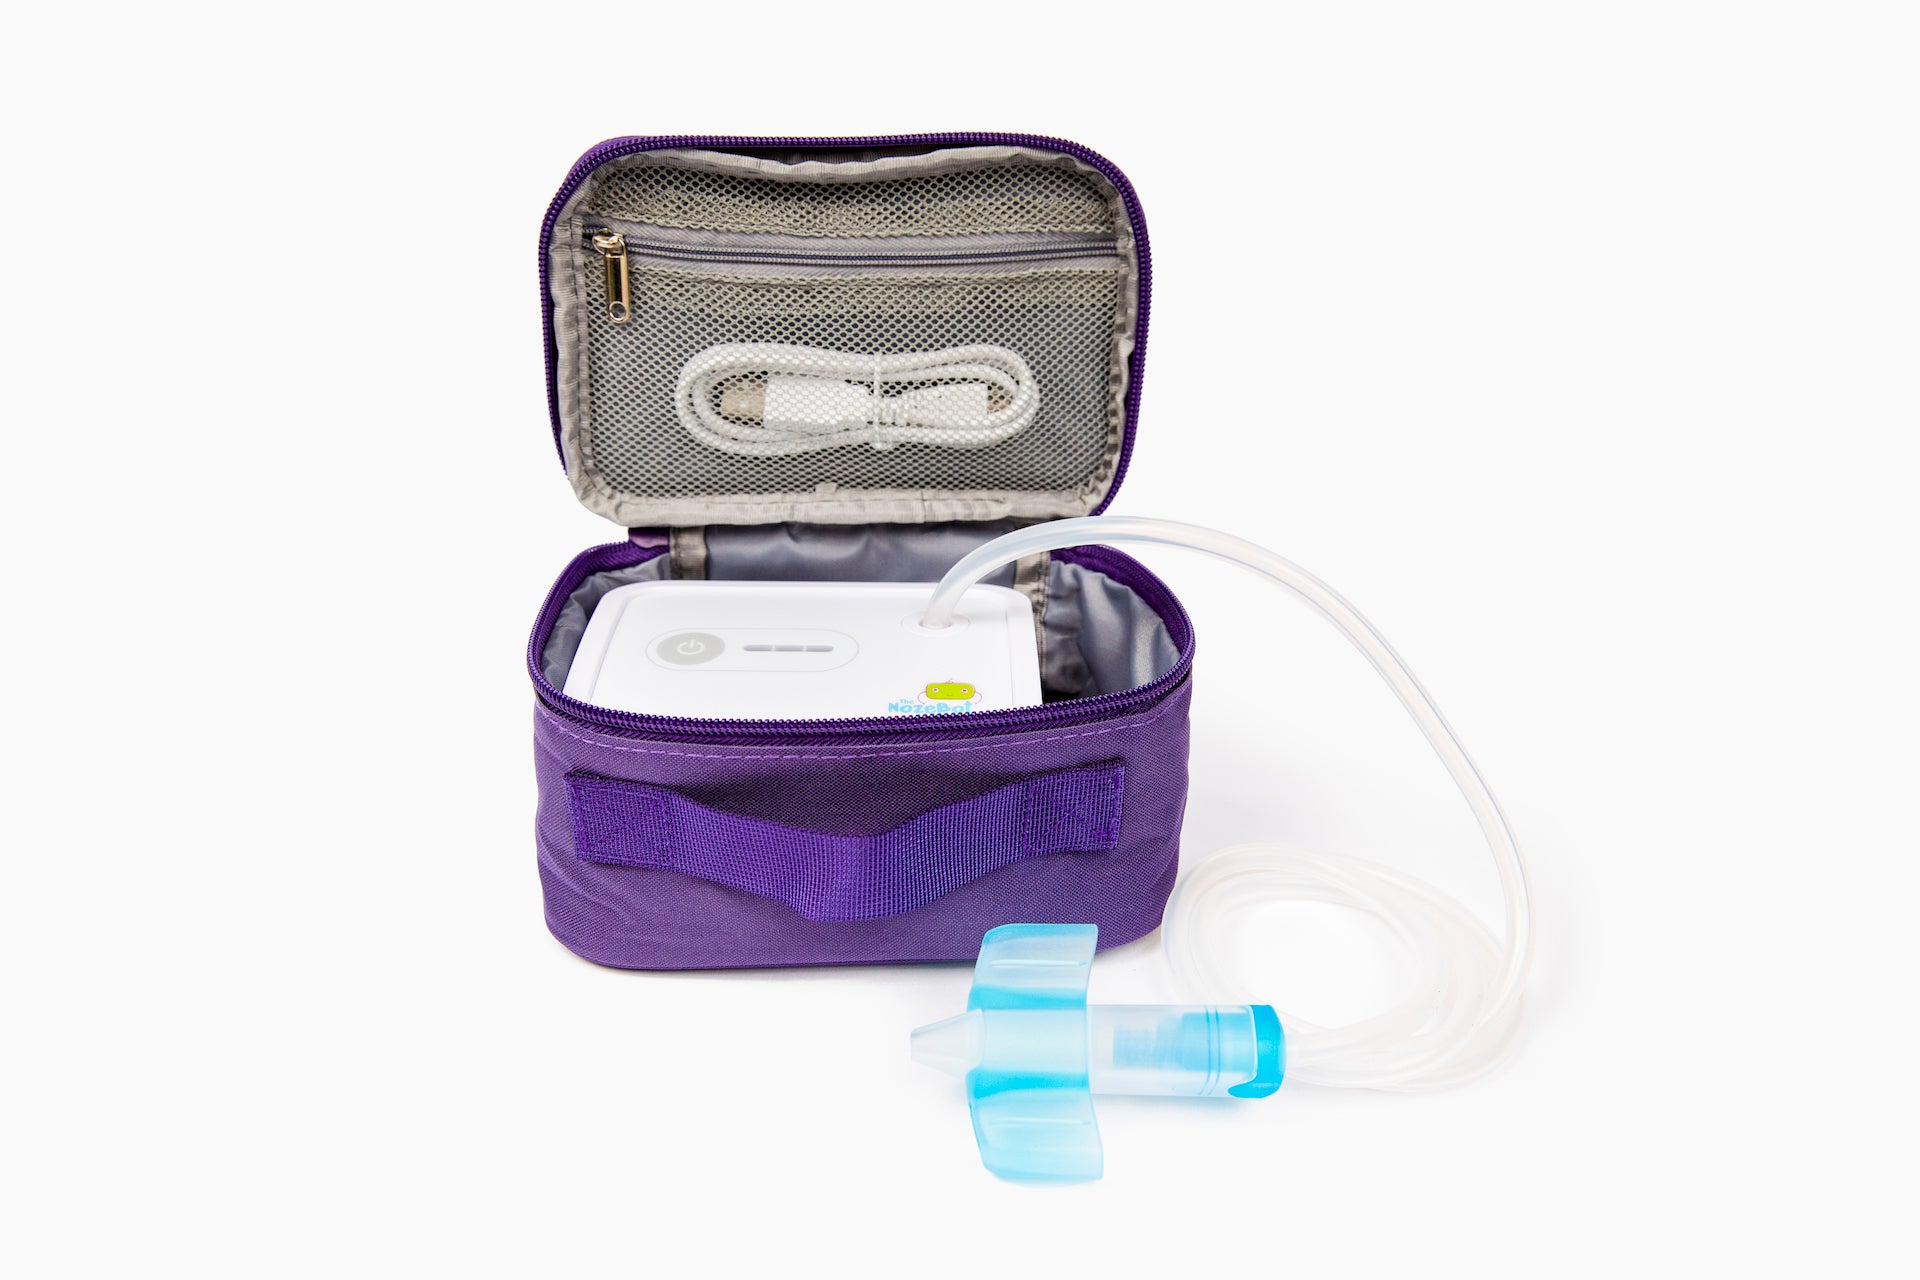 Accessories Bundle - Filters, Nosepiece, Tubing | Dr. Noze Best